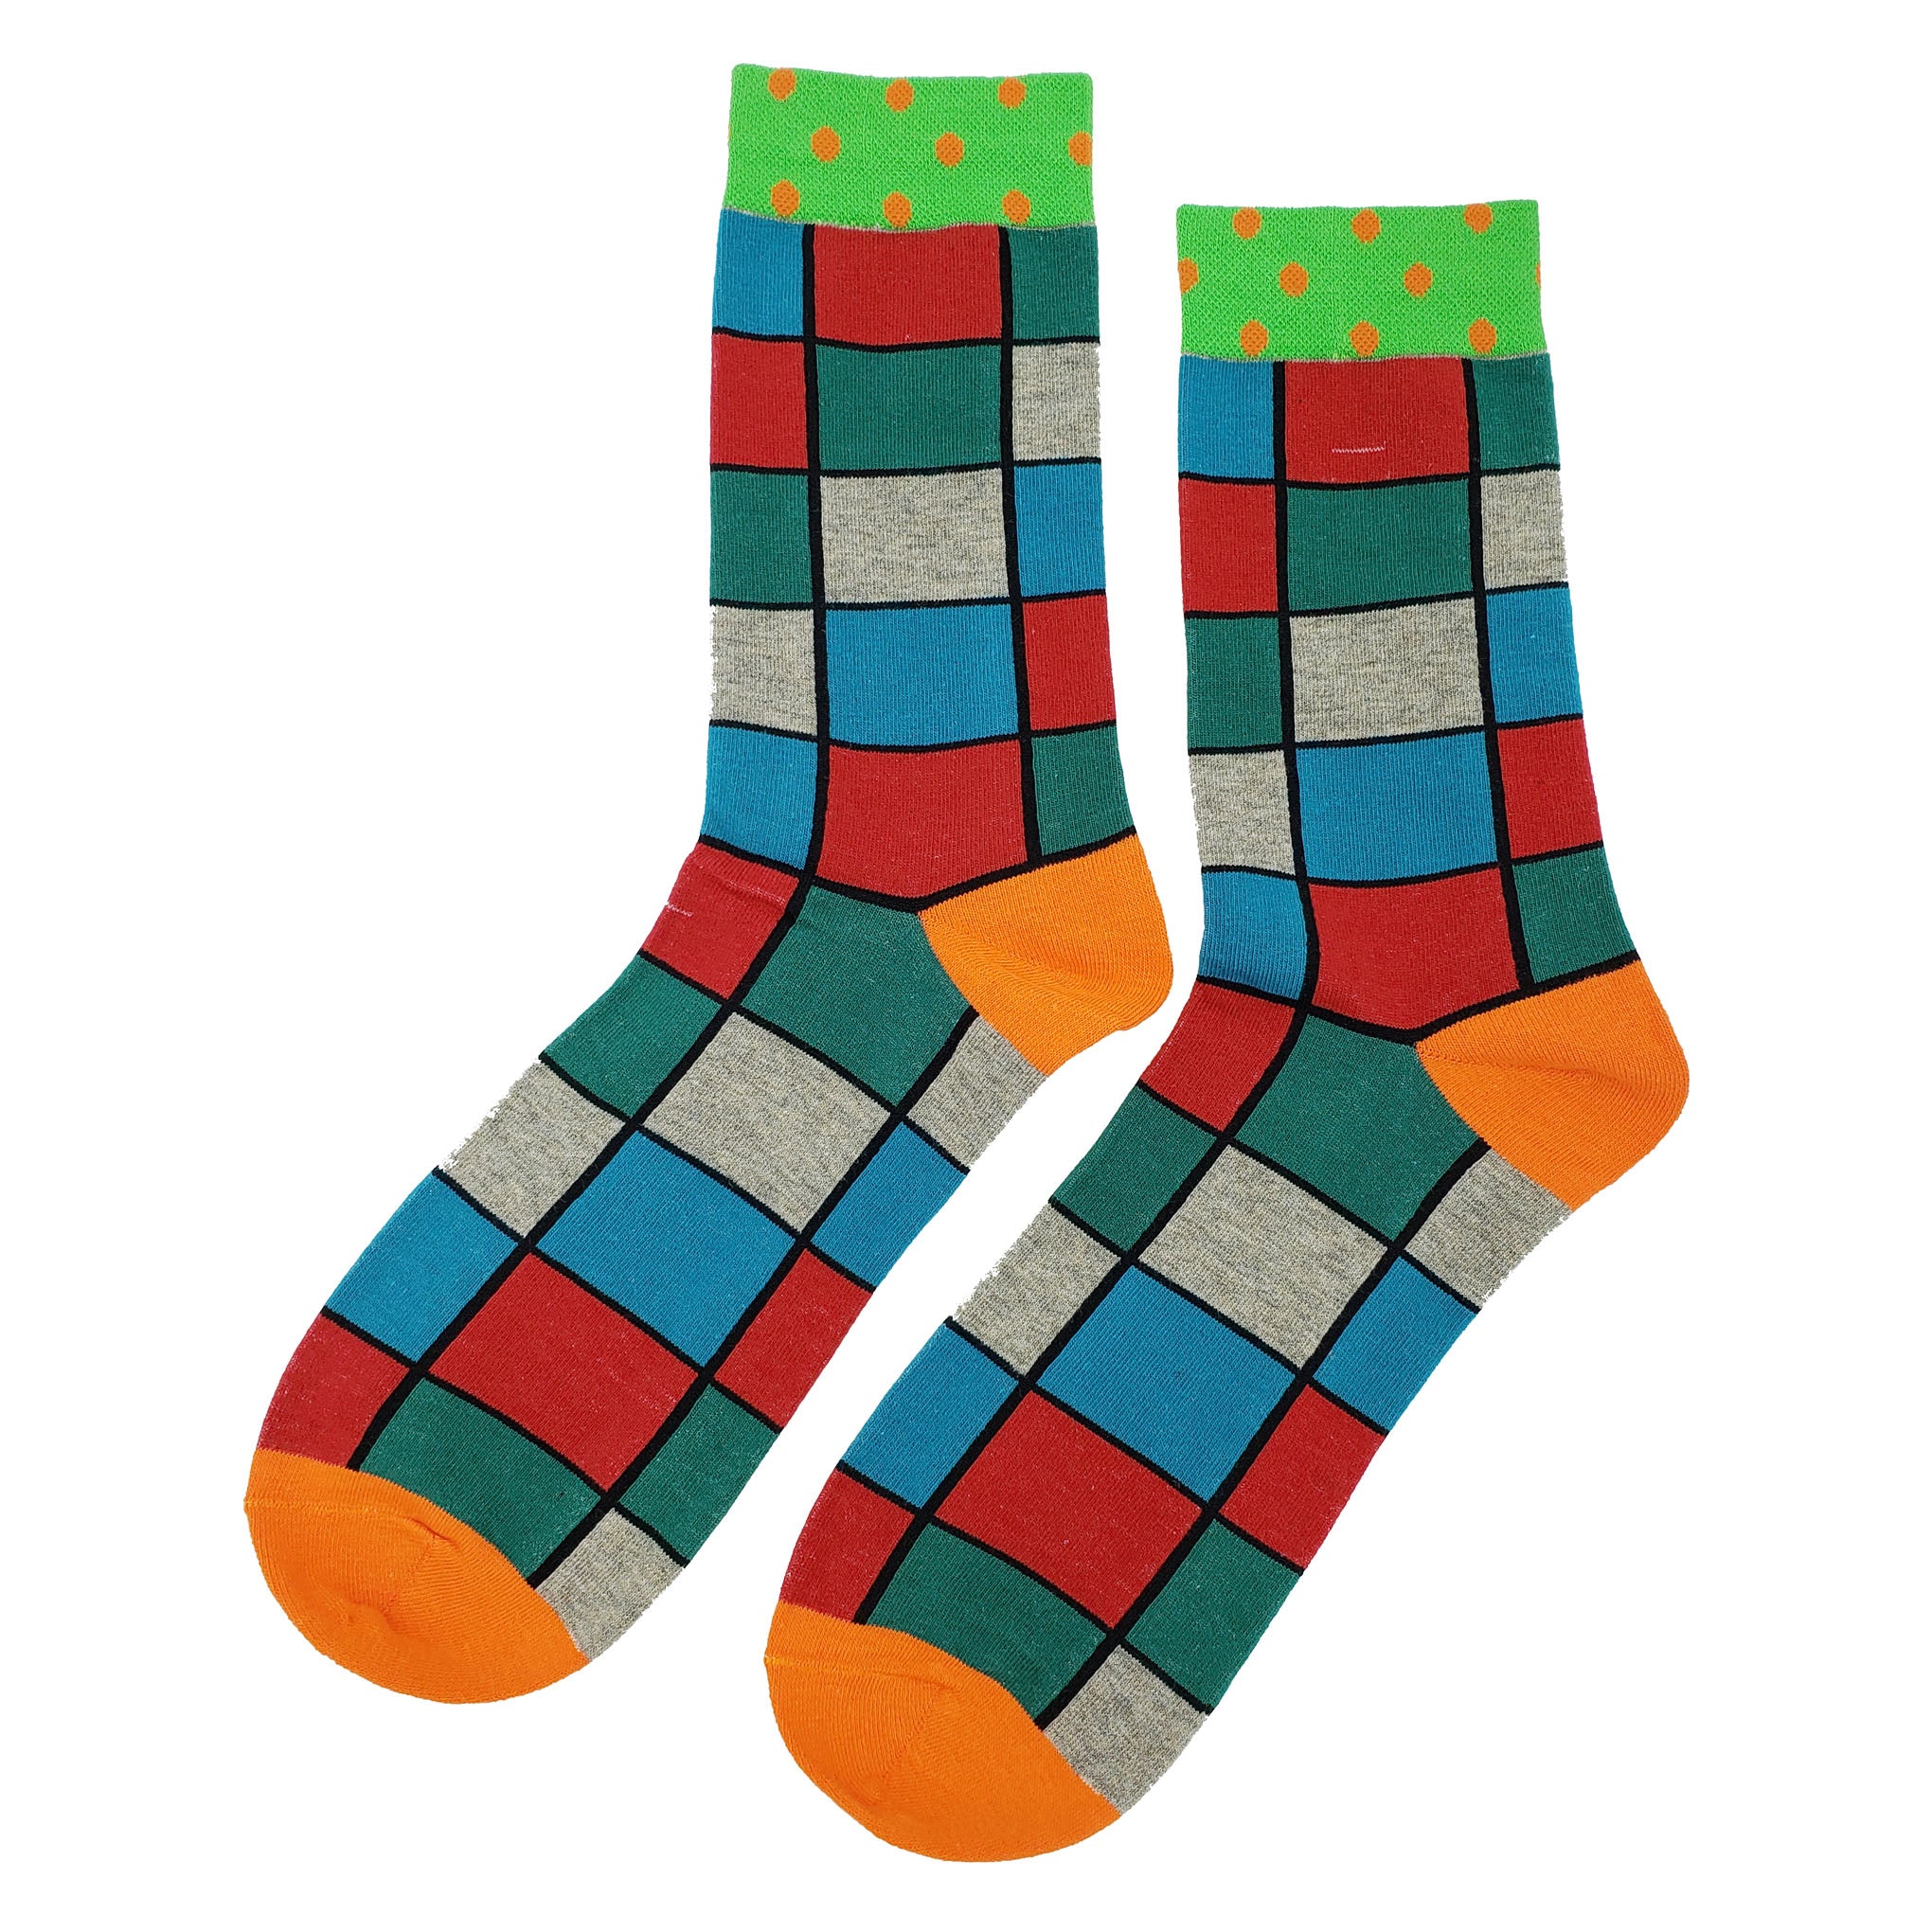 Funny Square Socks - Fun and Crazy Socks at Sockfly.com